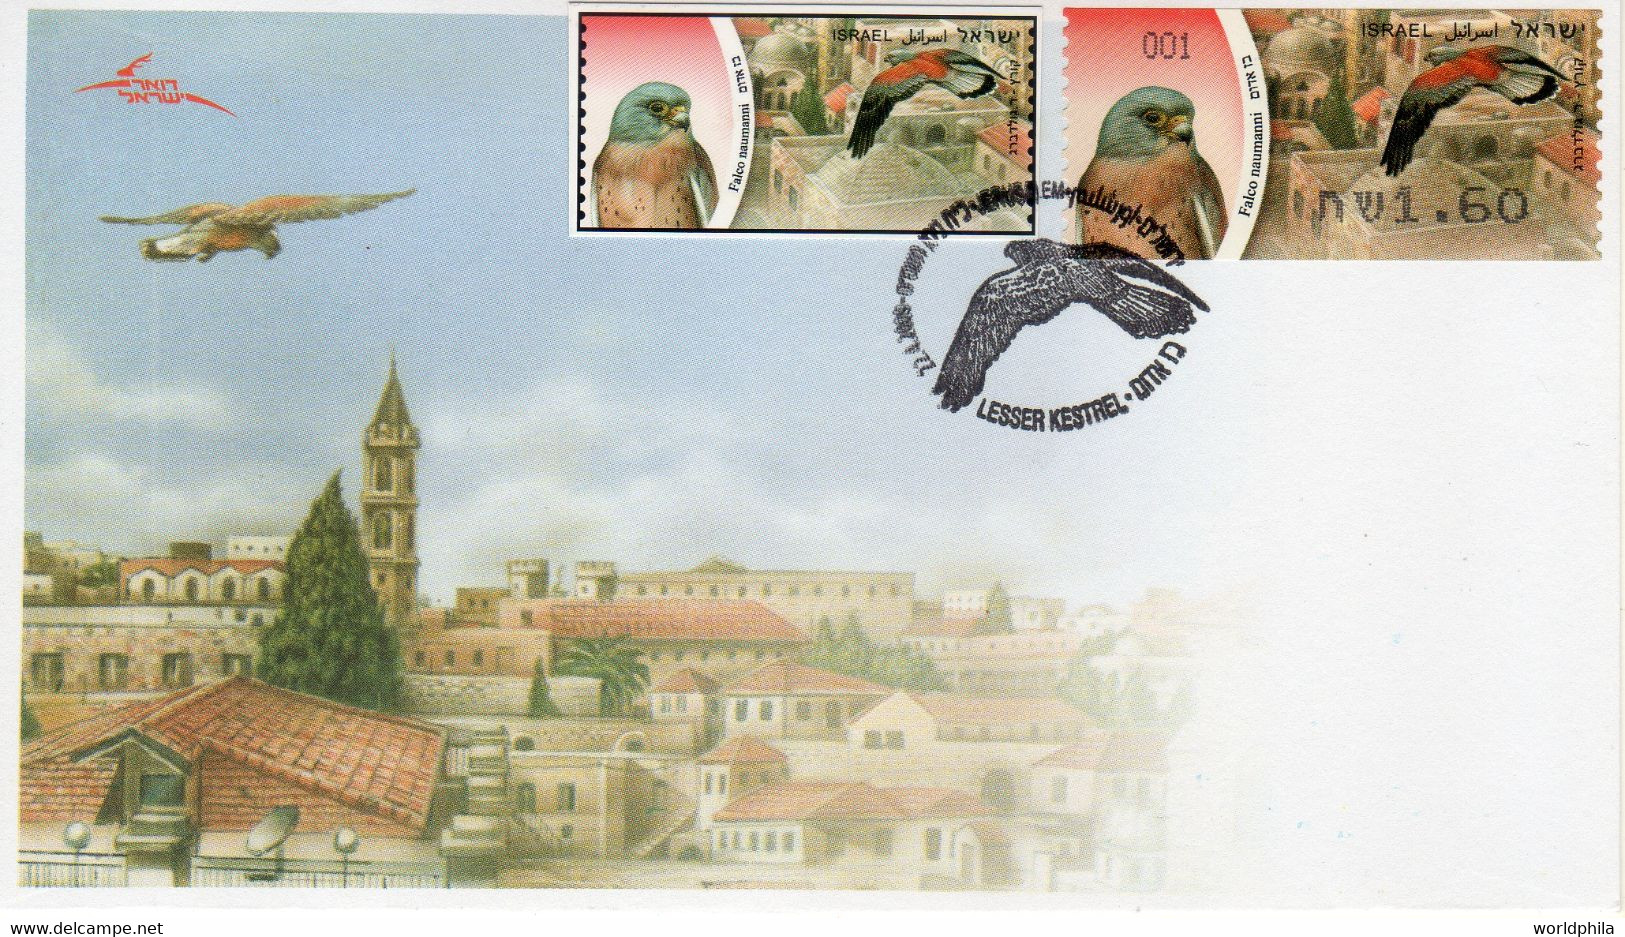 Israel 2009 Extremely Rare Falco Hanmahni Bird, ATM Stamp, Designer Photo Proof, Essay+regular FDC 9 - Geschnittene, Druckproben Und Abarten